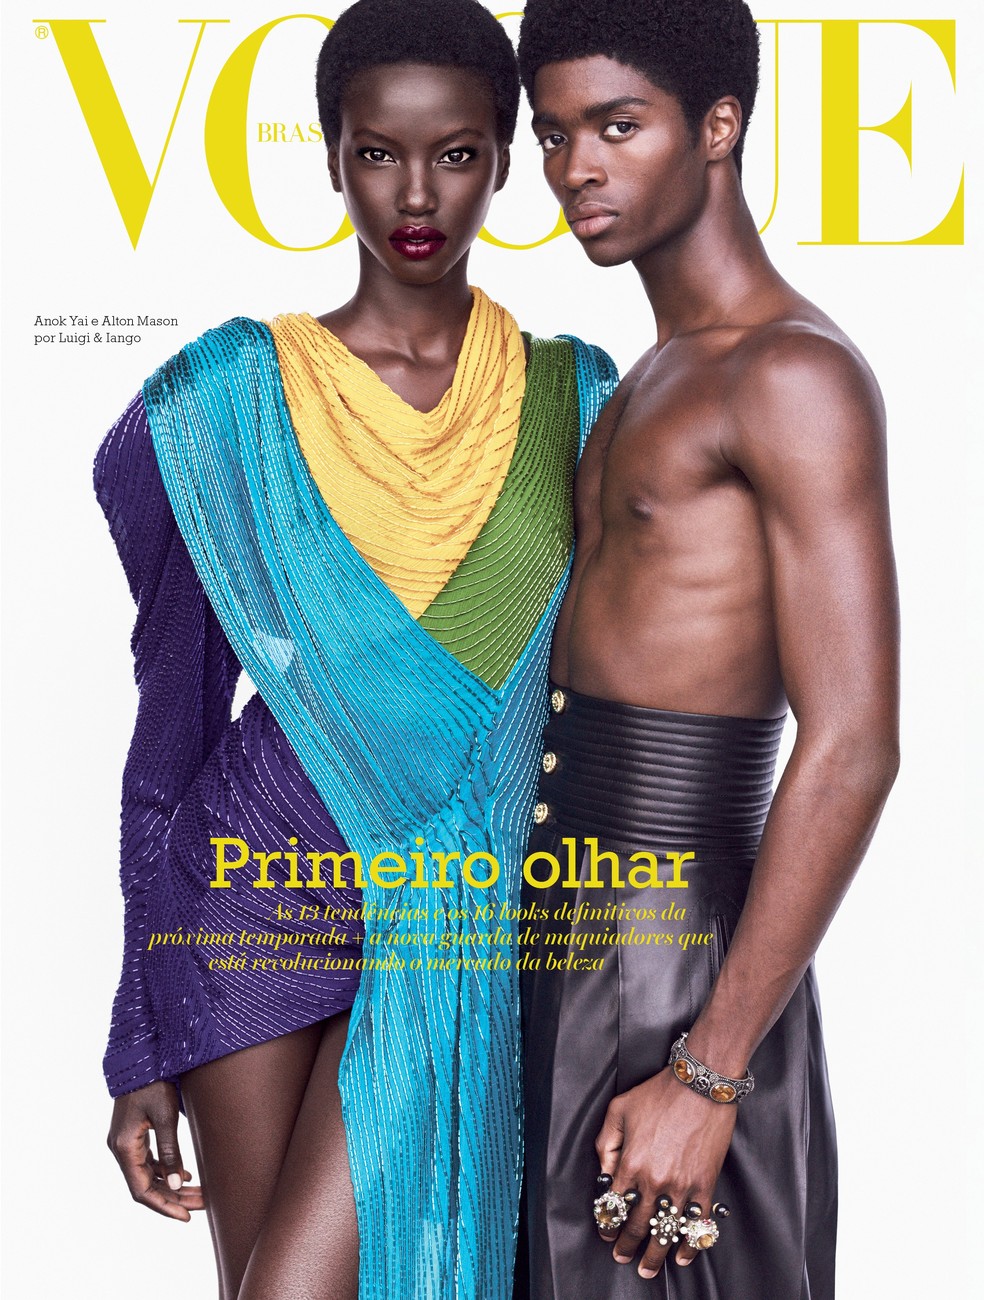 Anok Yai usa vestido Gucci e Alton Mason usa calça, pulseiras e anéis, tudo Gucci (Foto: Luigi & Iango/Vogue Brasil) — Foto: Vogue